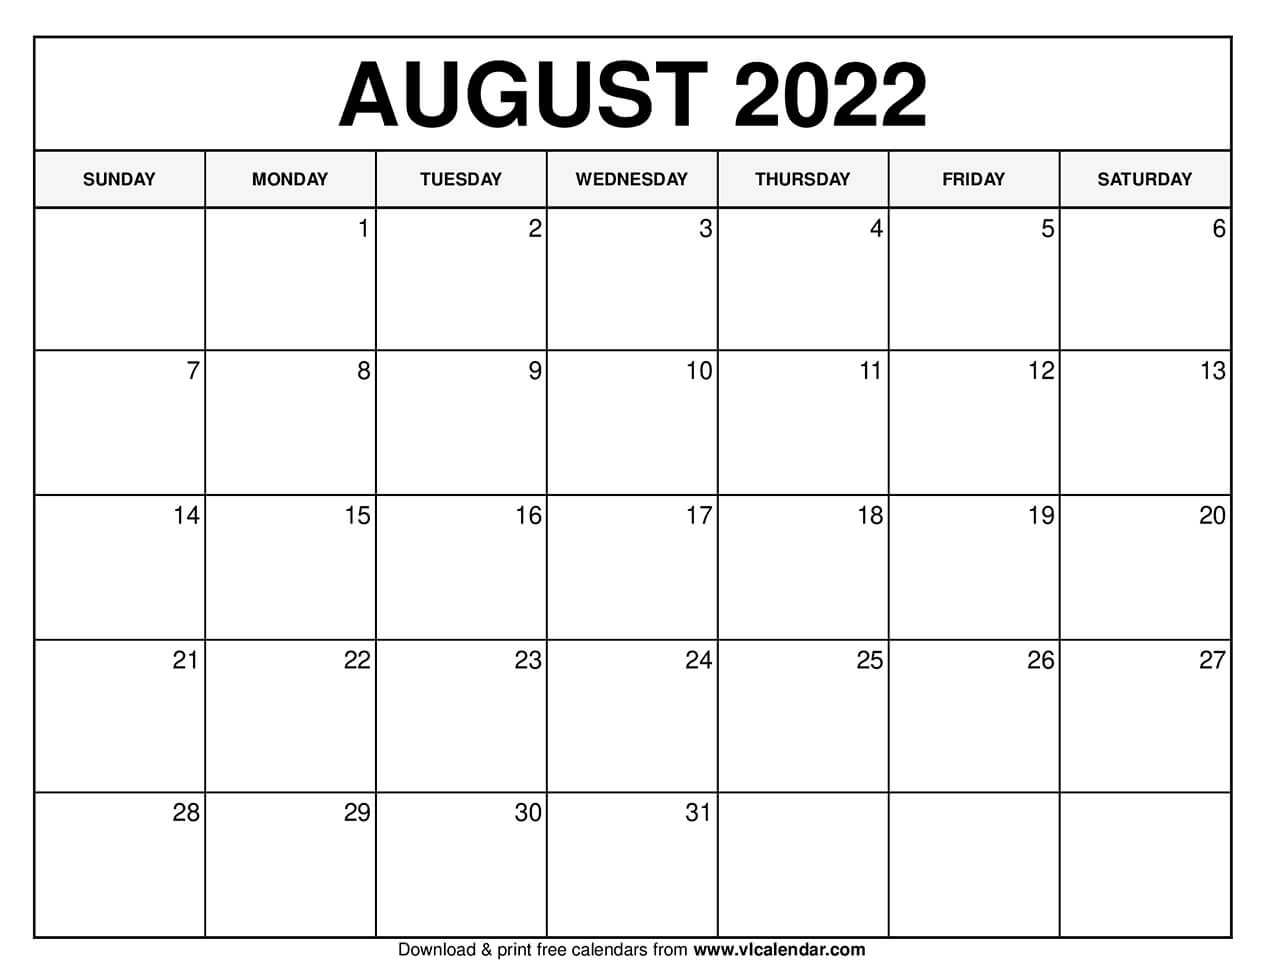 Printable August 2022 Calendar Templates With Holidays VL Calendar